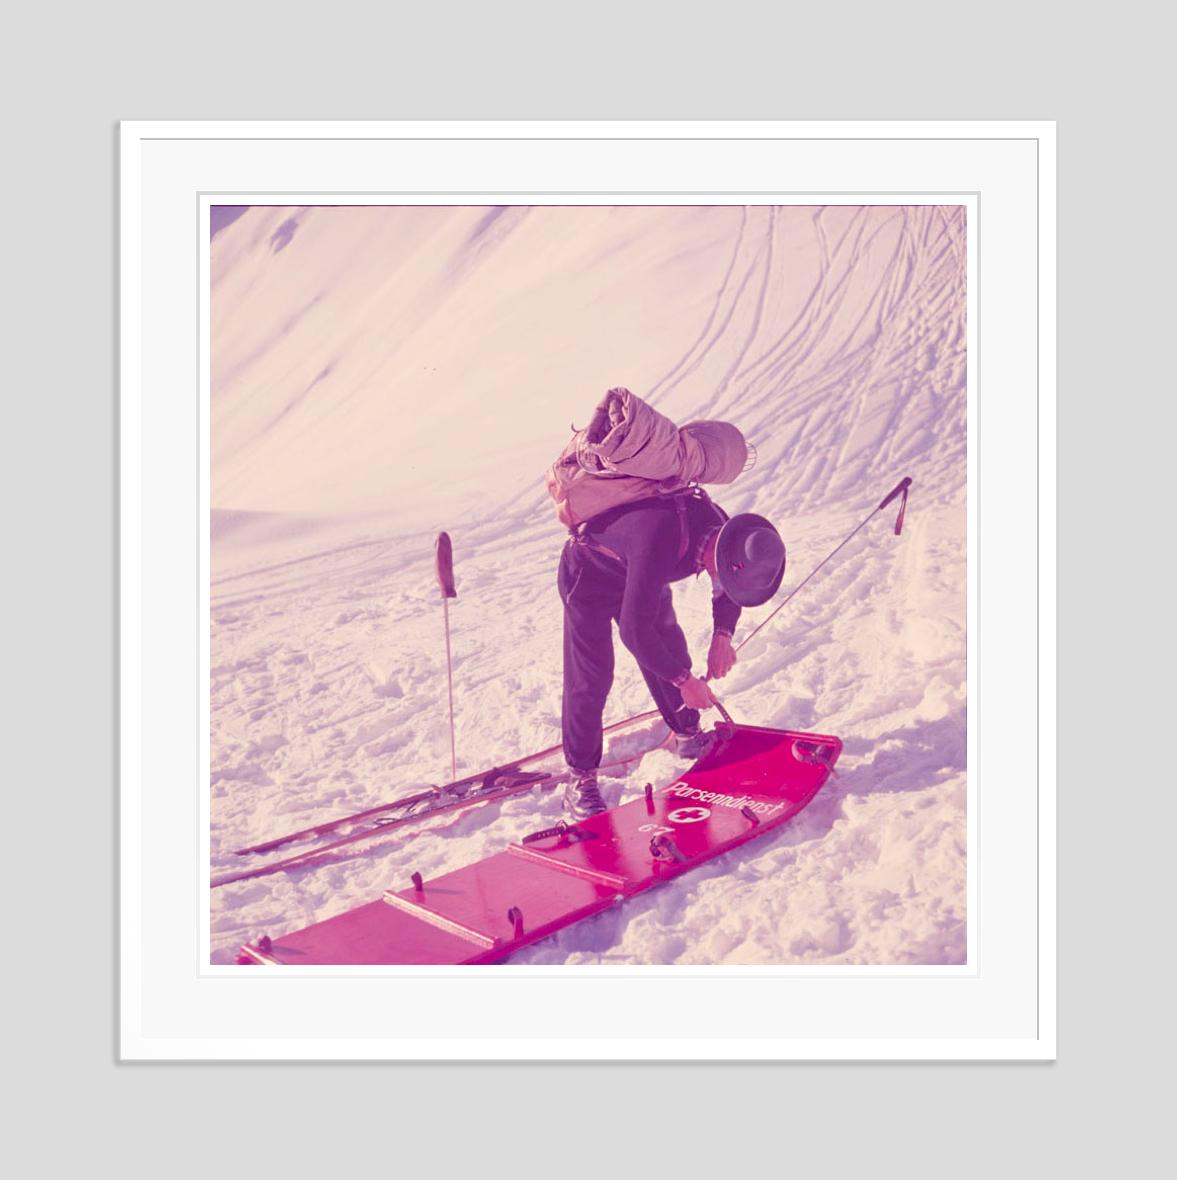 Bergspitze

1951

Ein Mitglied der Skipatrouille von Klosters überprüft eine Bahre, Schweiz, 1951. 

von Toni Frissell

30 x 30